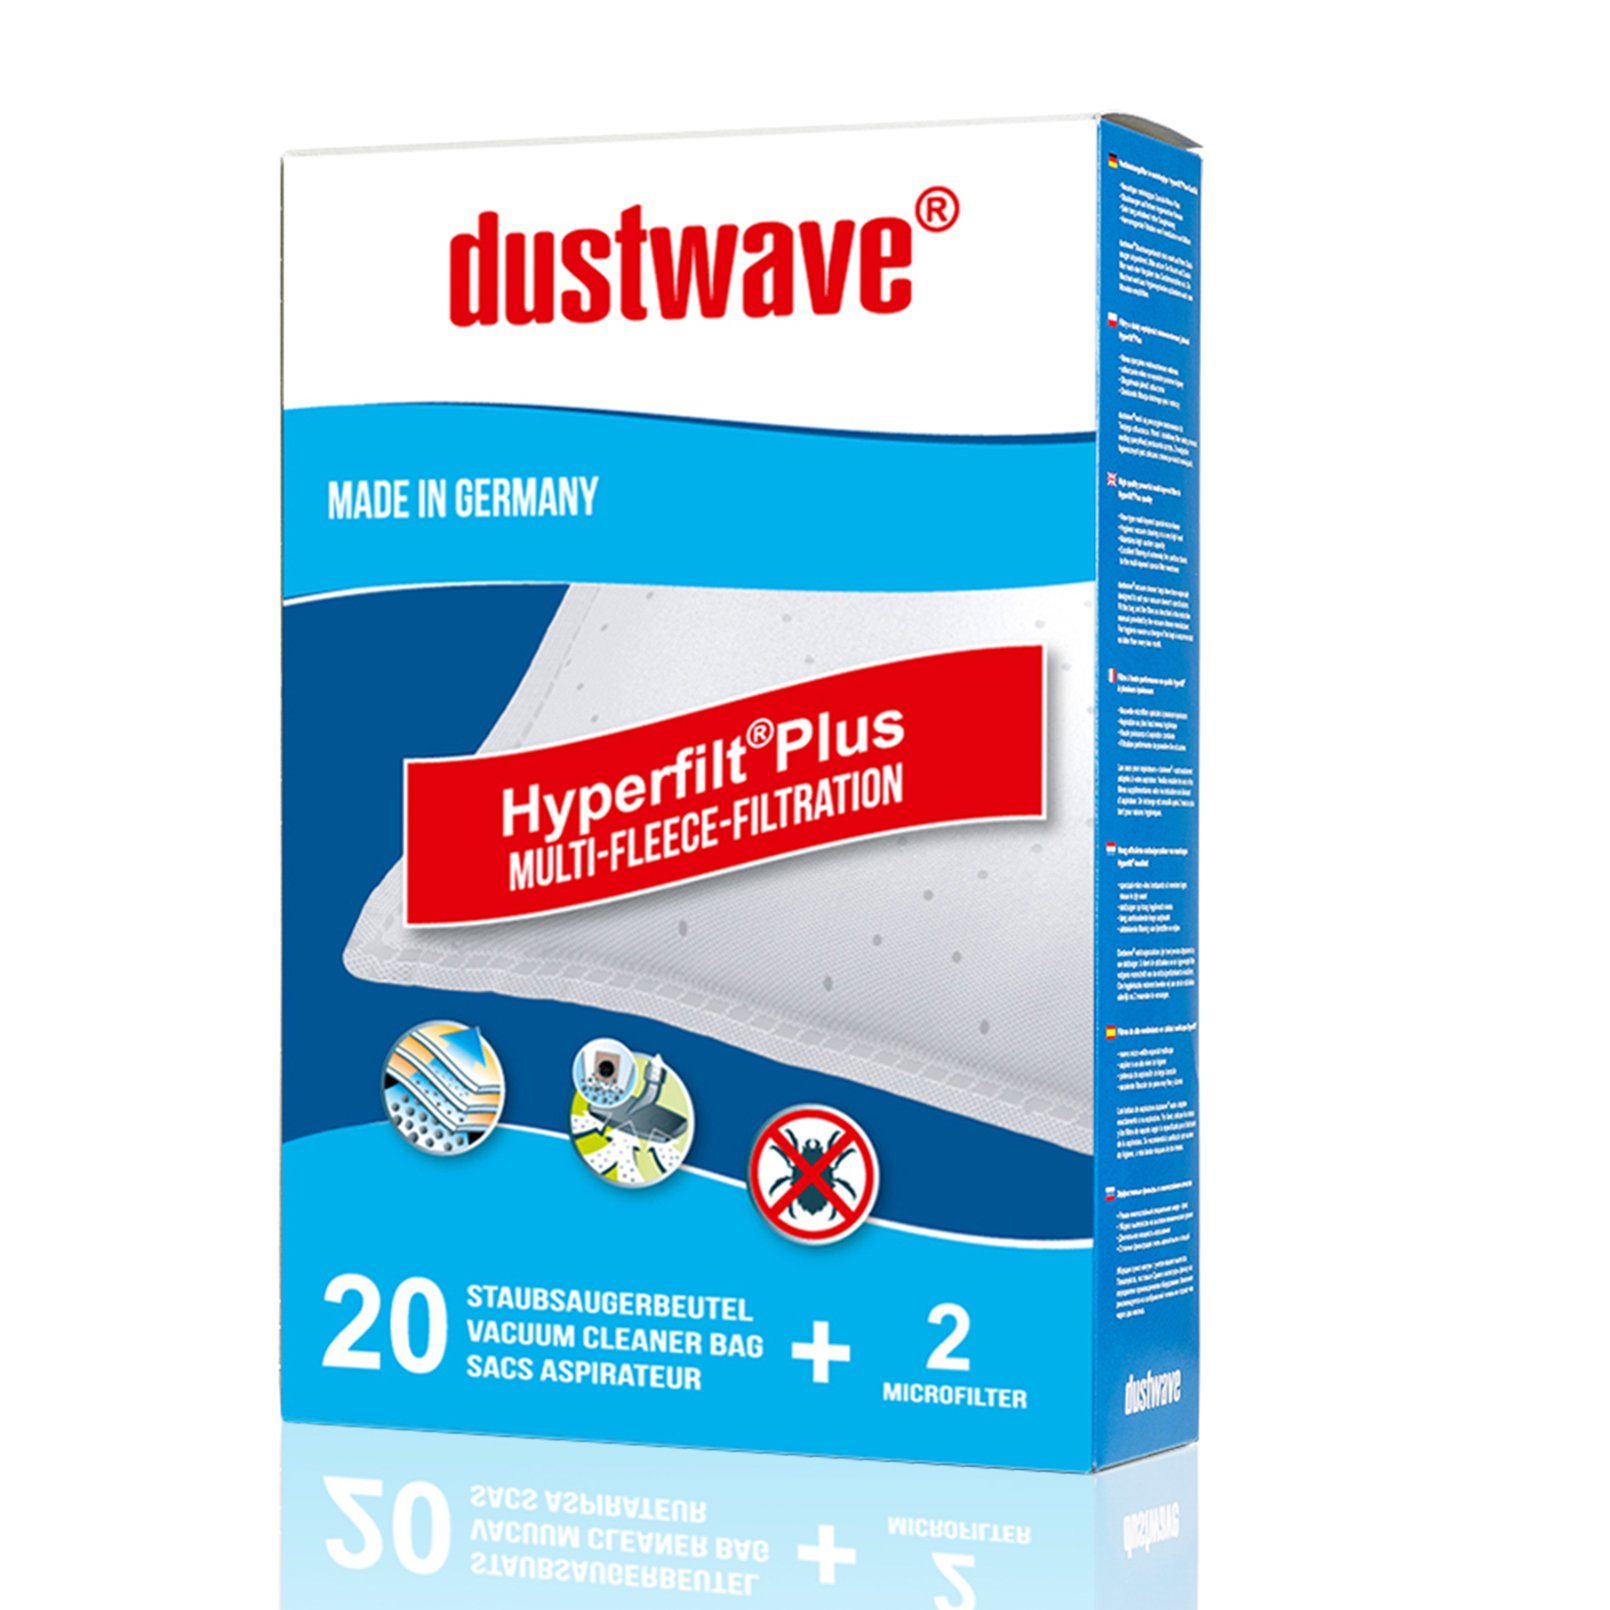 Dustwave Staubsaugerbeutel Megapack, passend für Baur 340.895 / 340-895, 20 St., Megapack, 20 Staubsaugerbeutel + 2 Hepa-Filter (ca. 15x15cm - zuschneidbar)